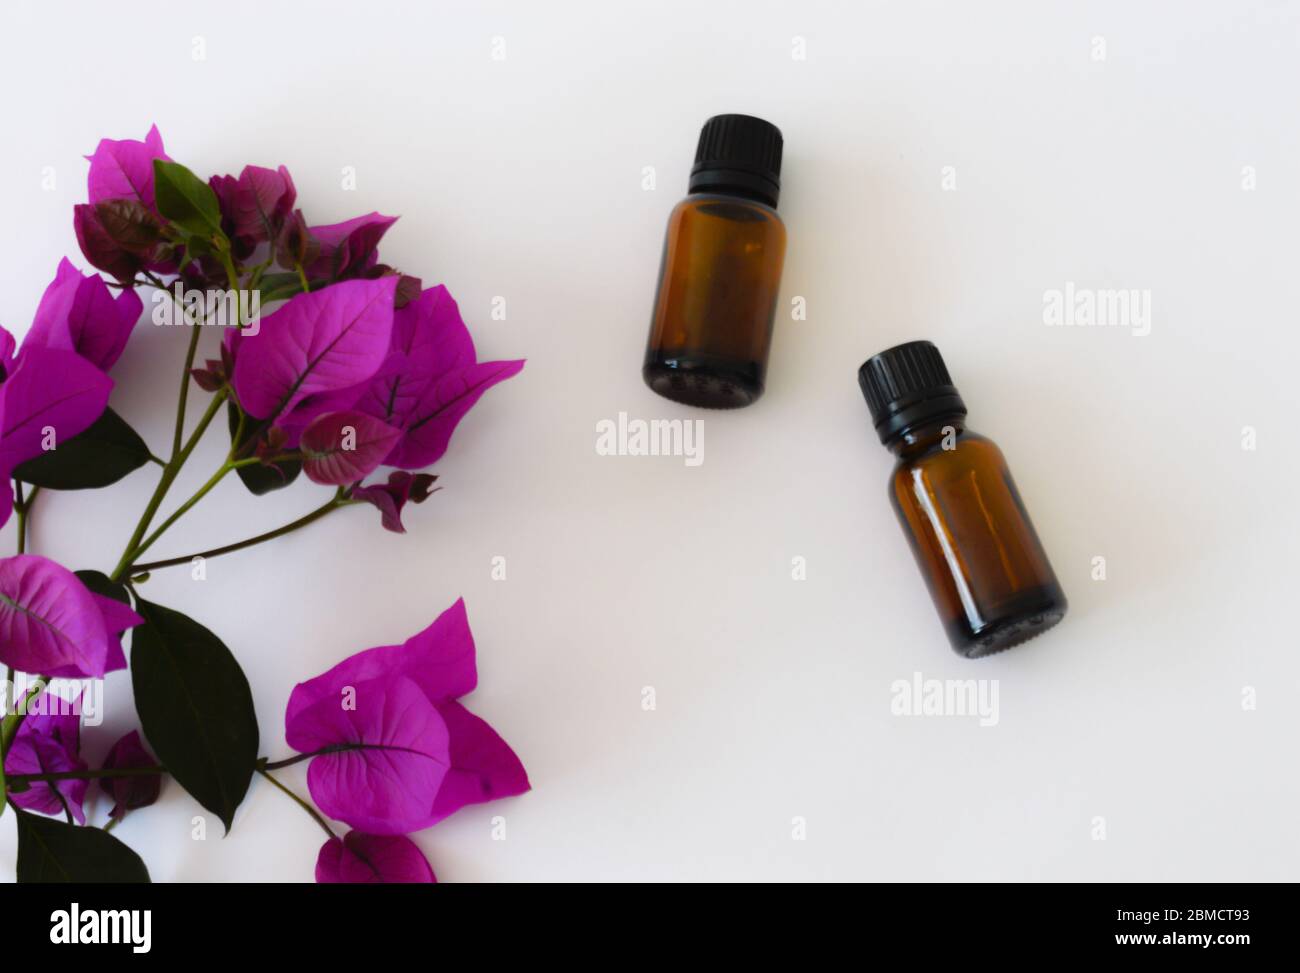 Zwei Flaschen ätherisches Öl mit violetten Blüten Stockfoto